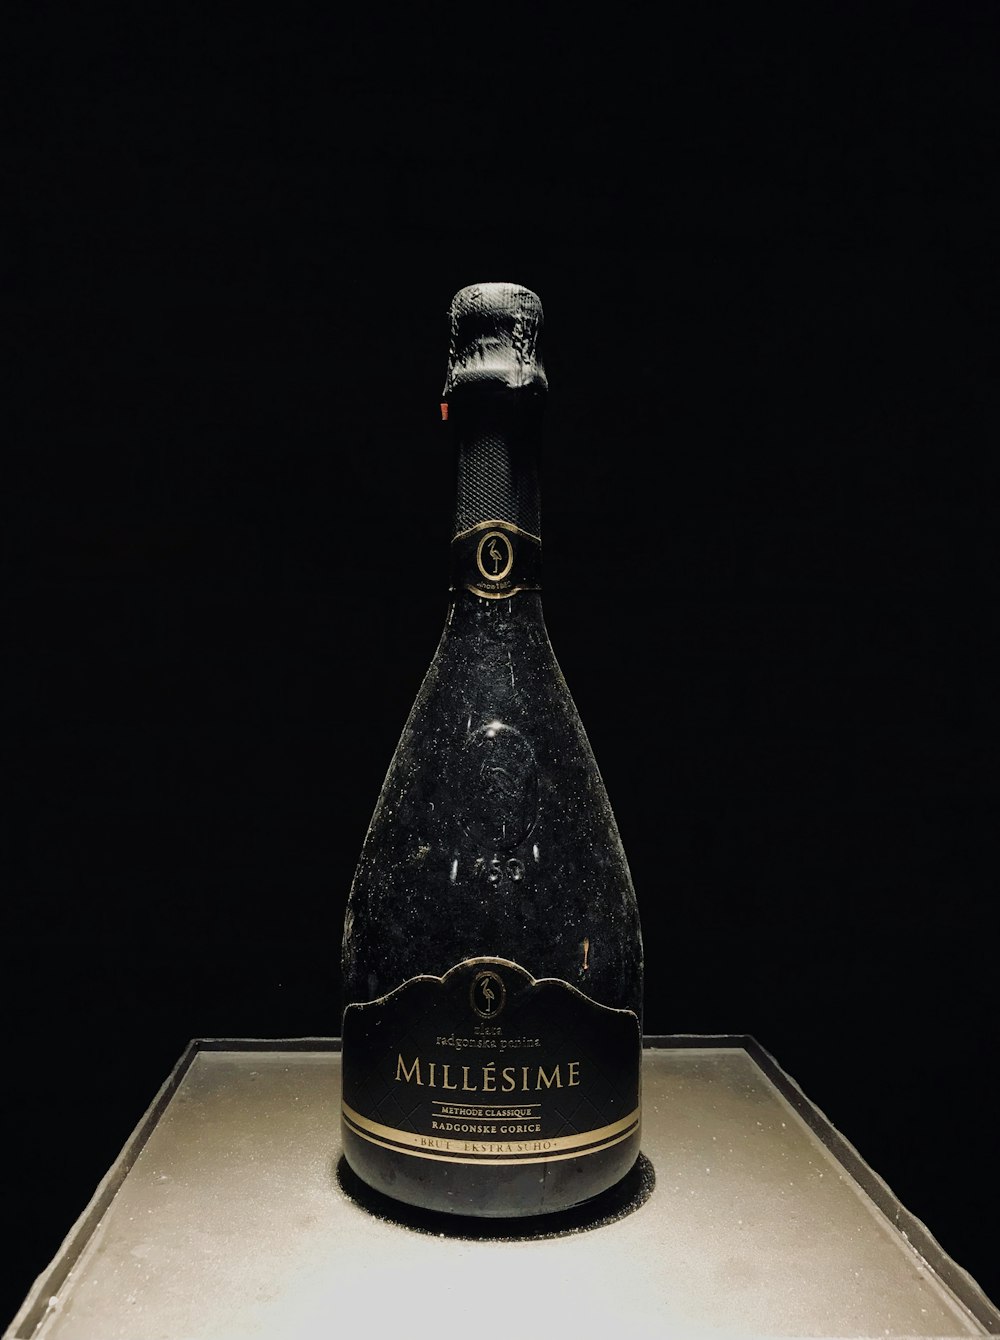 schwarze Millesime-Flasche auf brauner Oberfläche